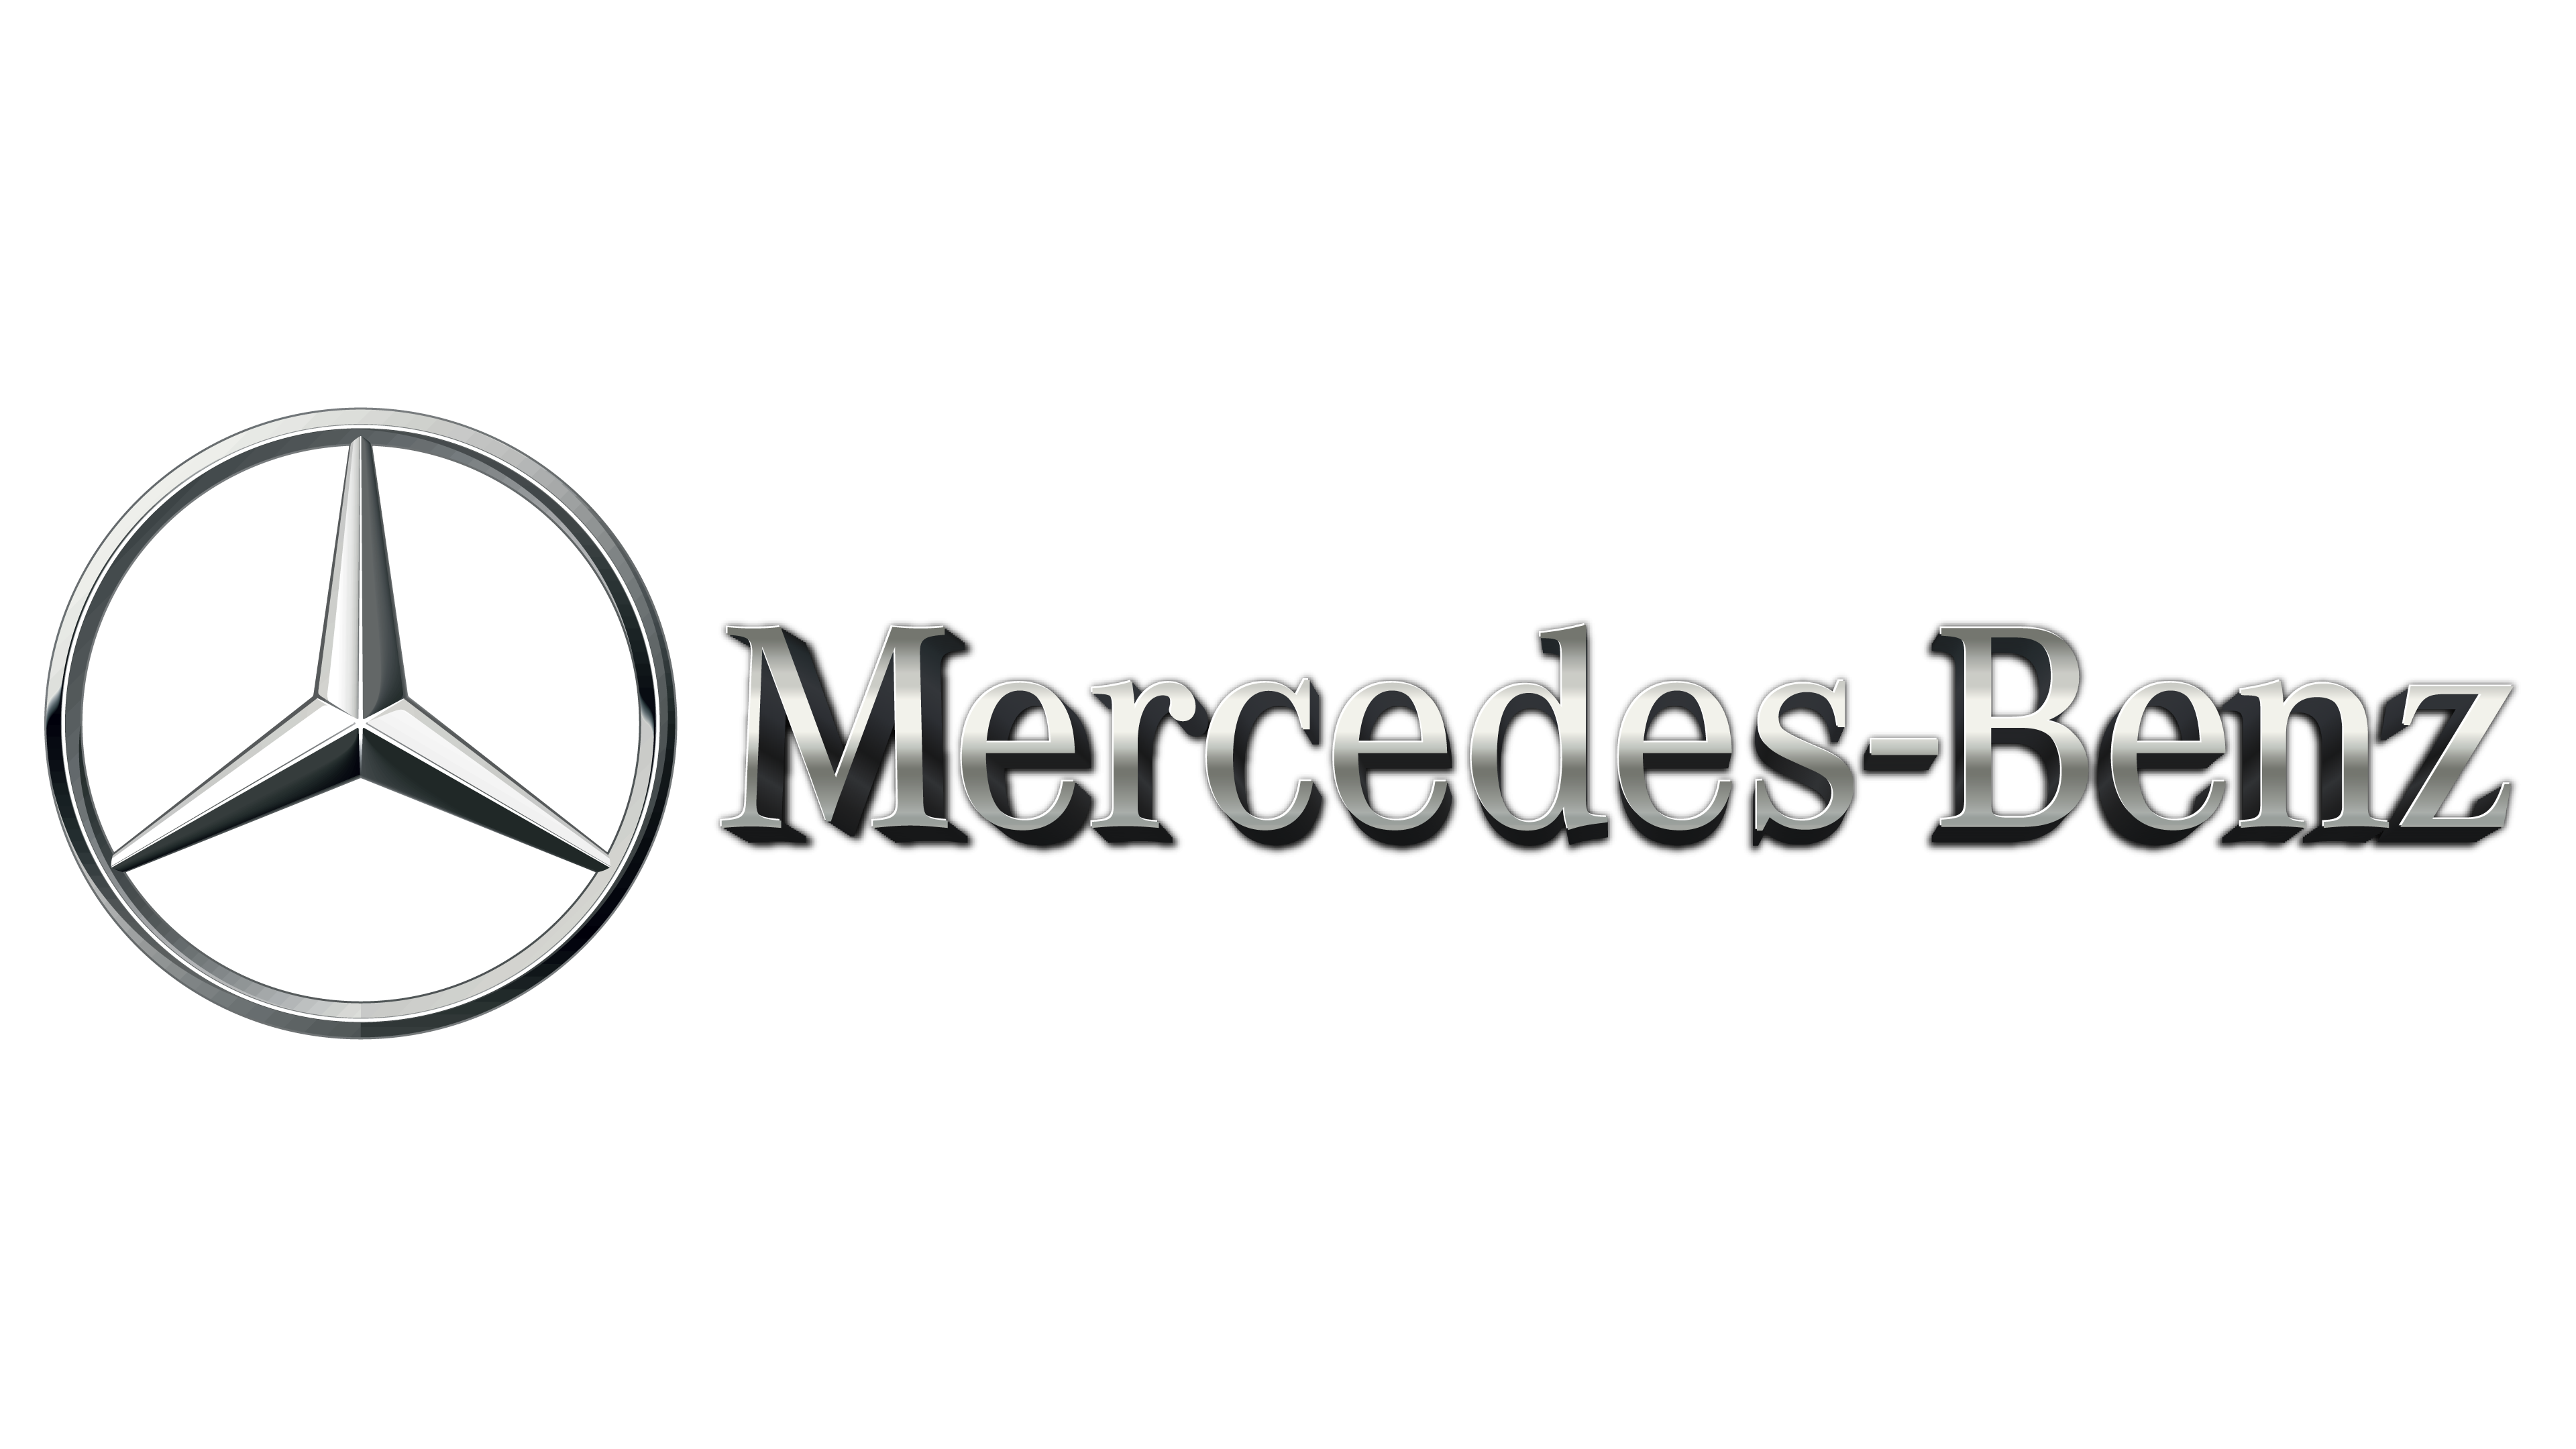 Мерседес бенц оригинал. Mercedes Benz logo. Надпись Мерседес Бенц. Логотип Мерседес на прозрачном фоне. Логотип Мерседес с надписью.